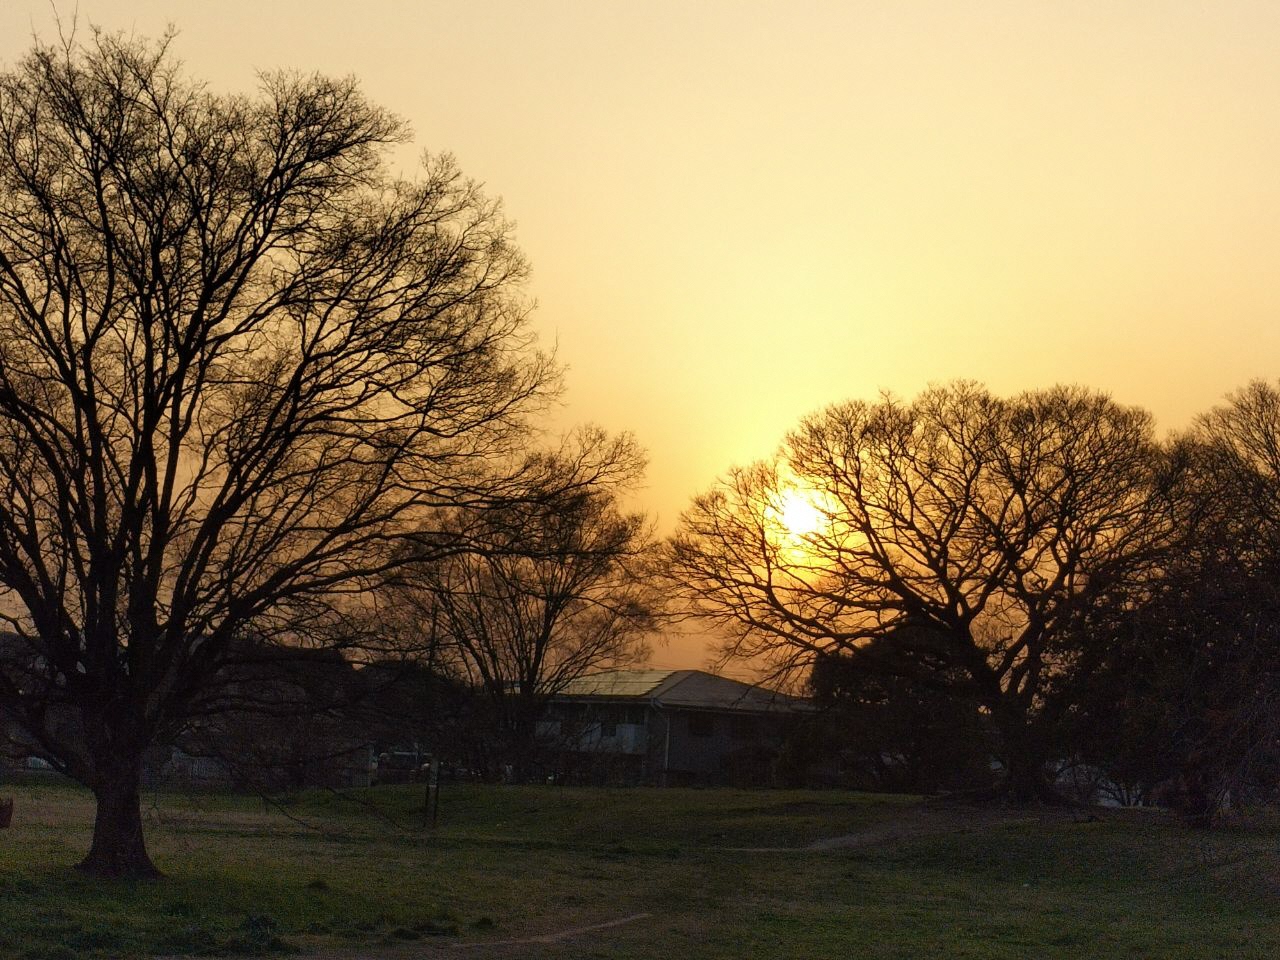 津堂城山古墳にて撮影された夕陽の写真